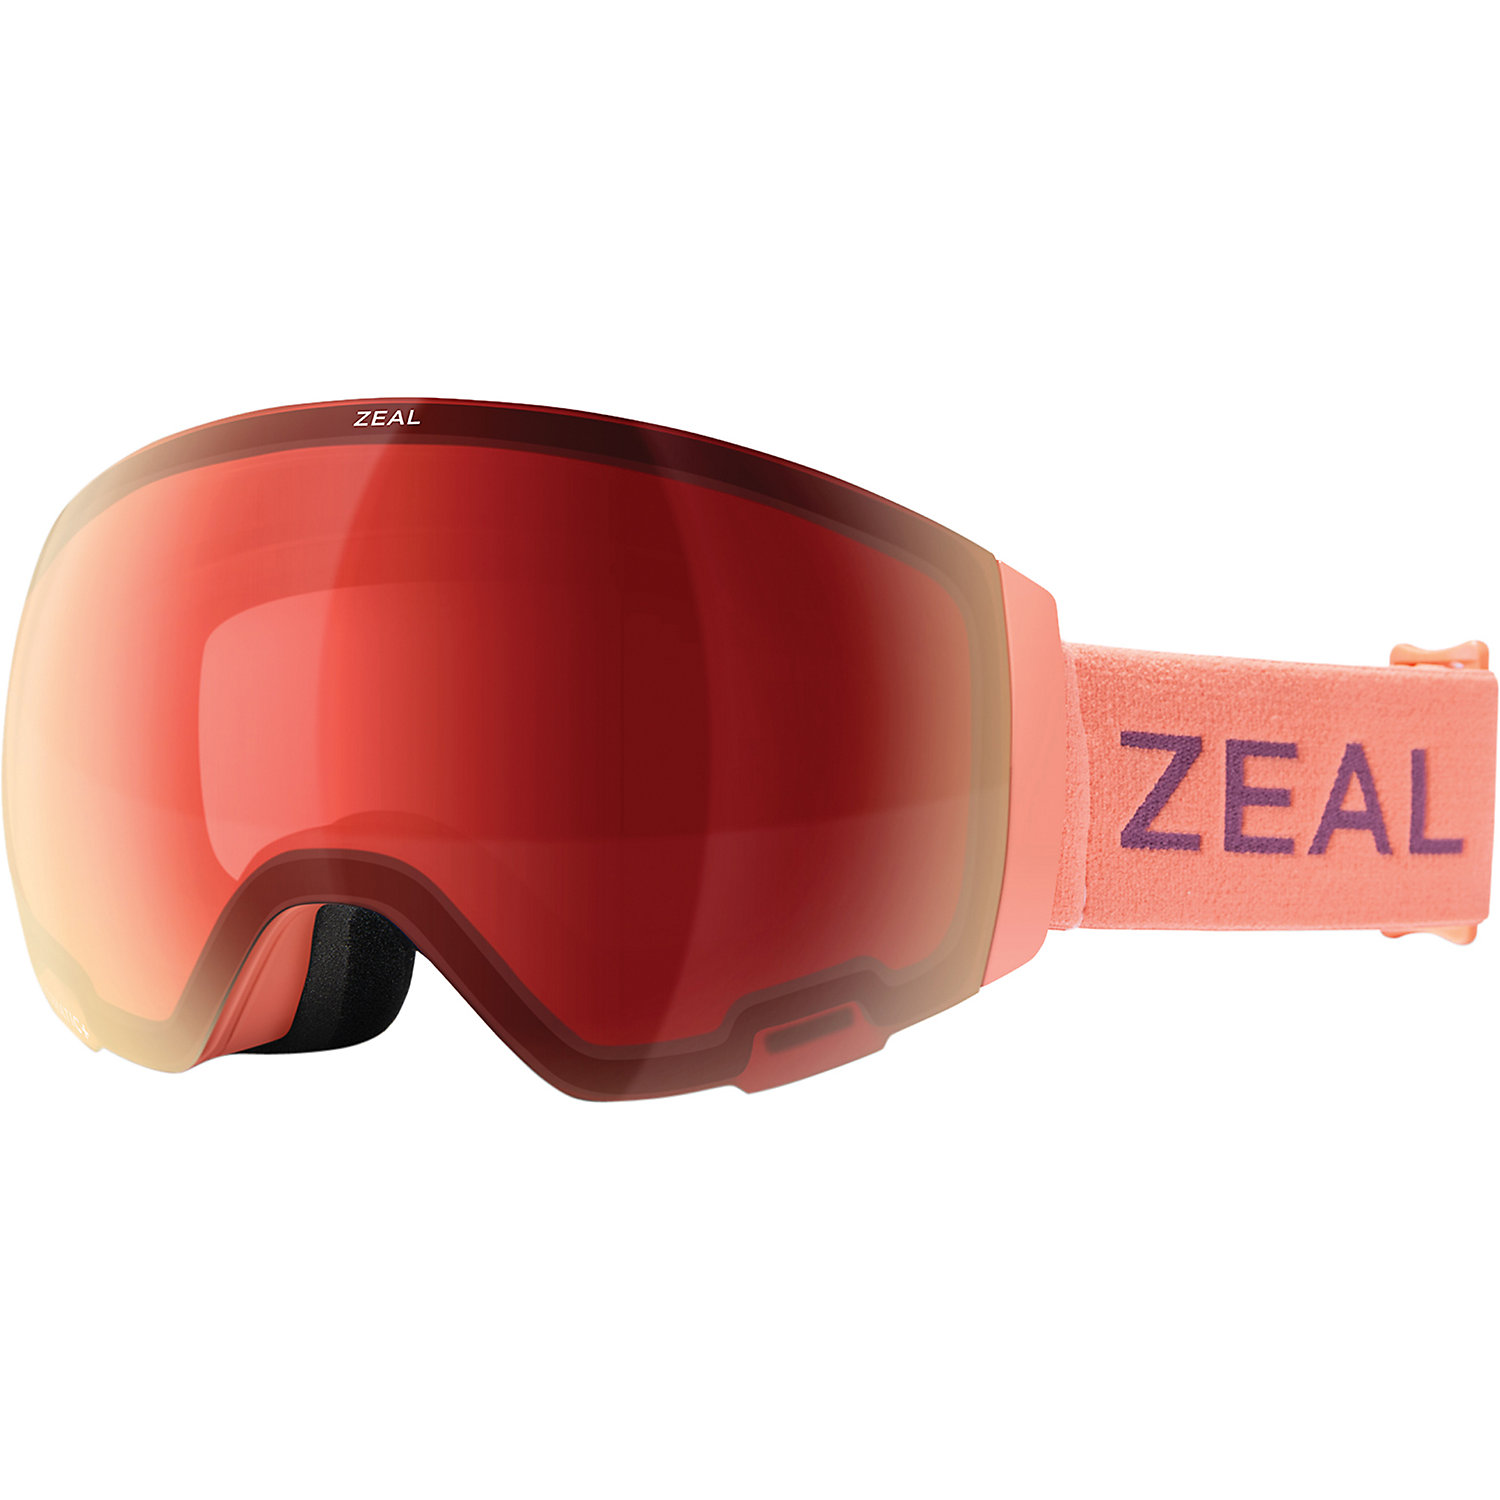 Zeal Portal / RLS Goggles